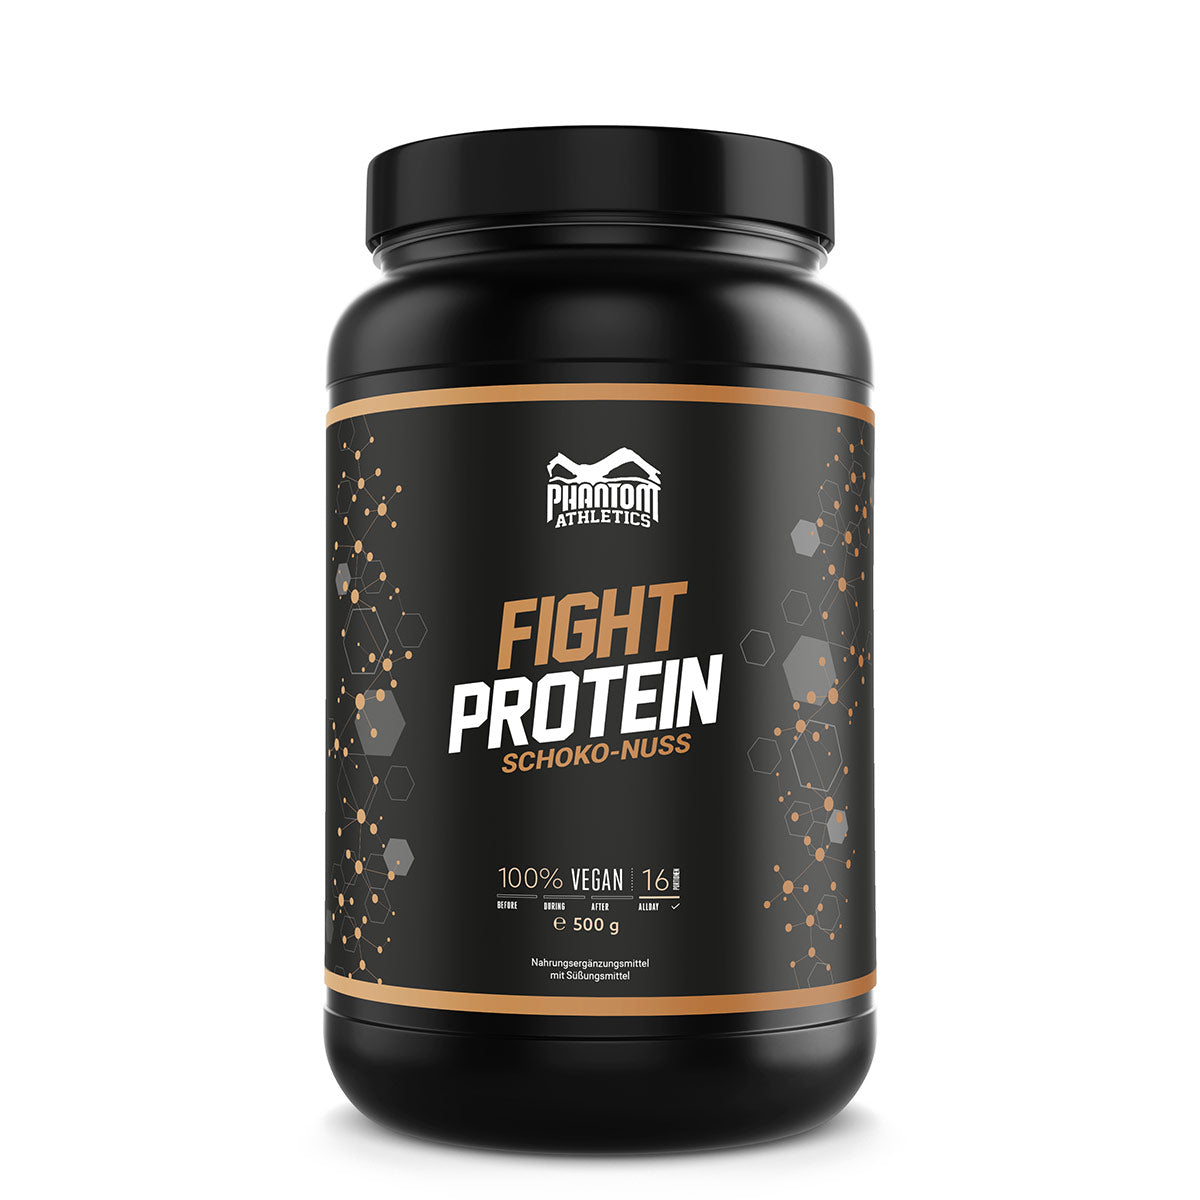 Phantom FIGHT Protein für Kampfsportler mit Schoko Nuss Geschmack.